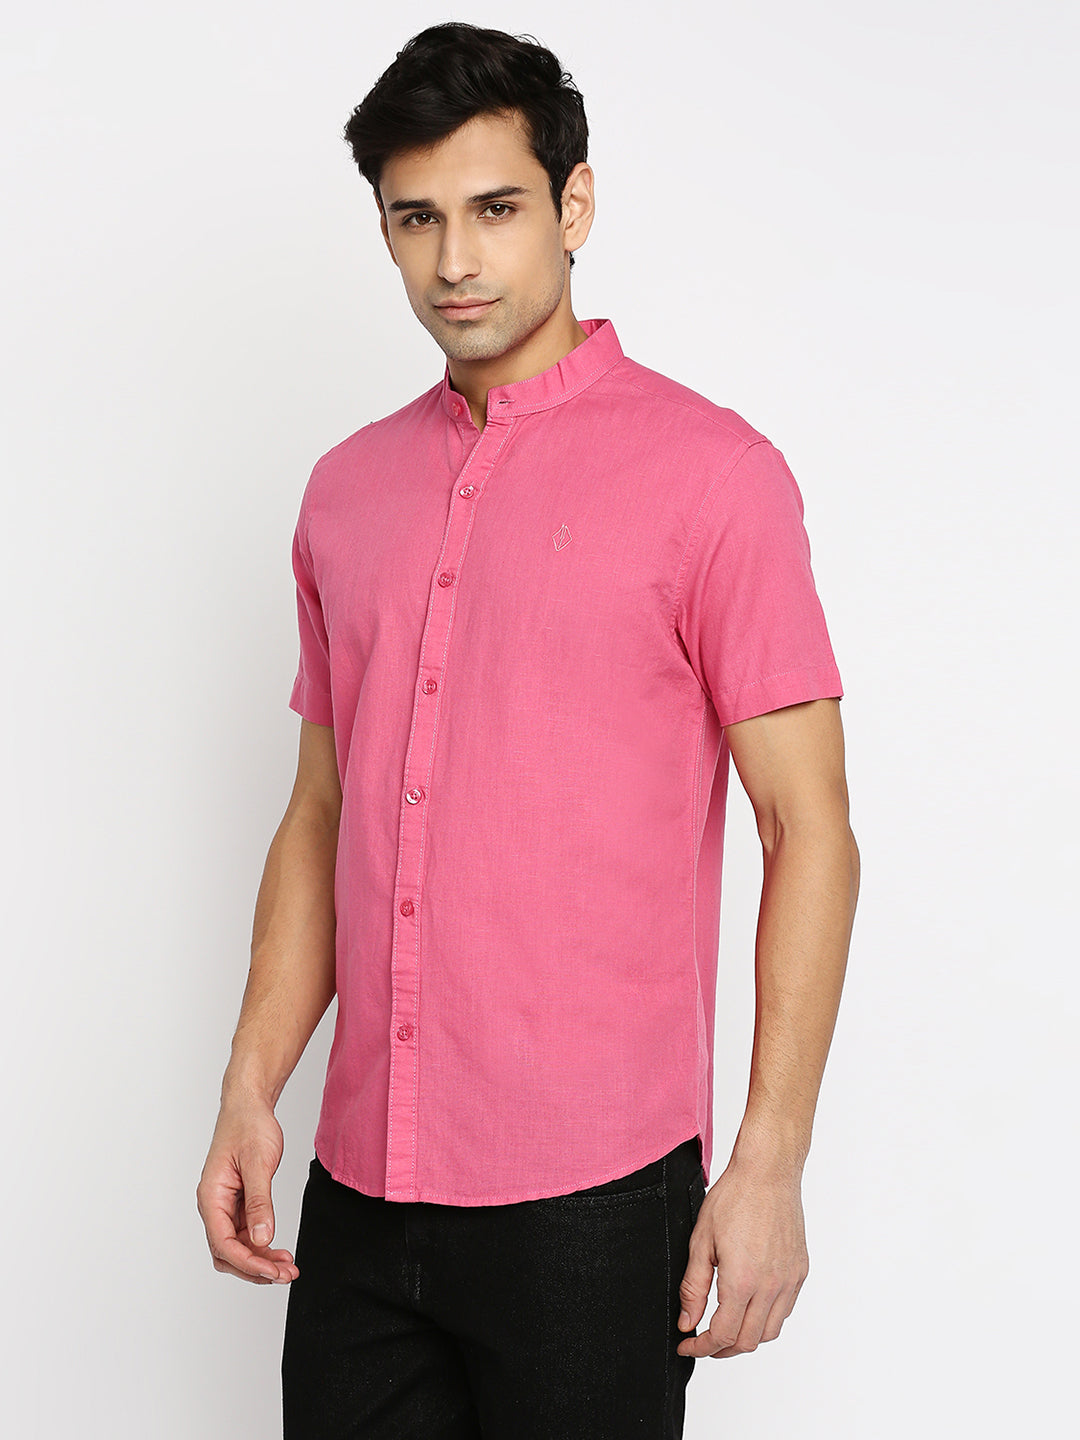 Mandarin Linen Cotton Light Pink Shirt